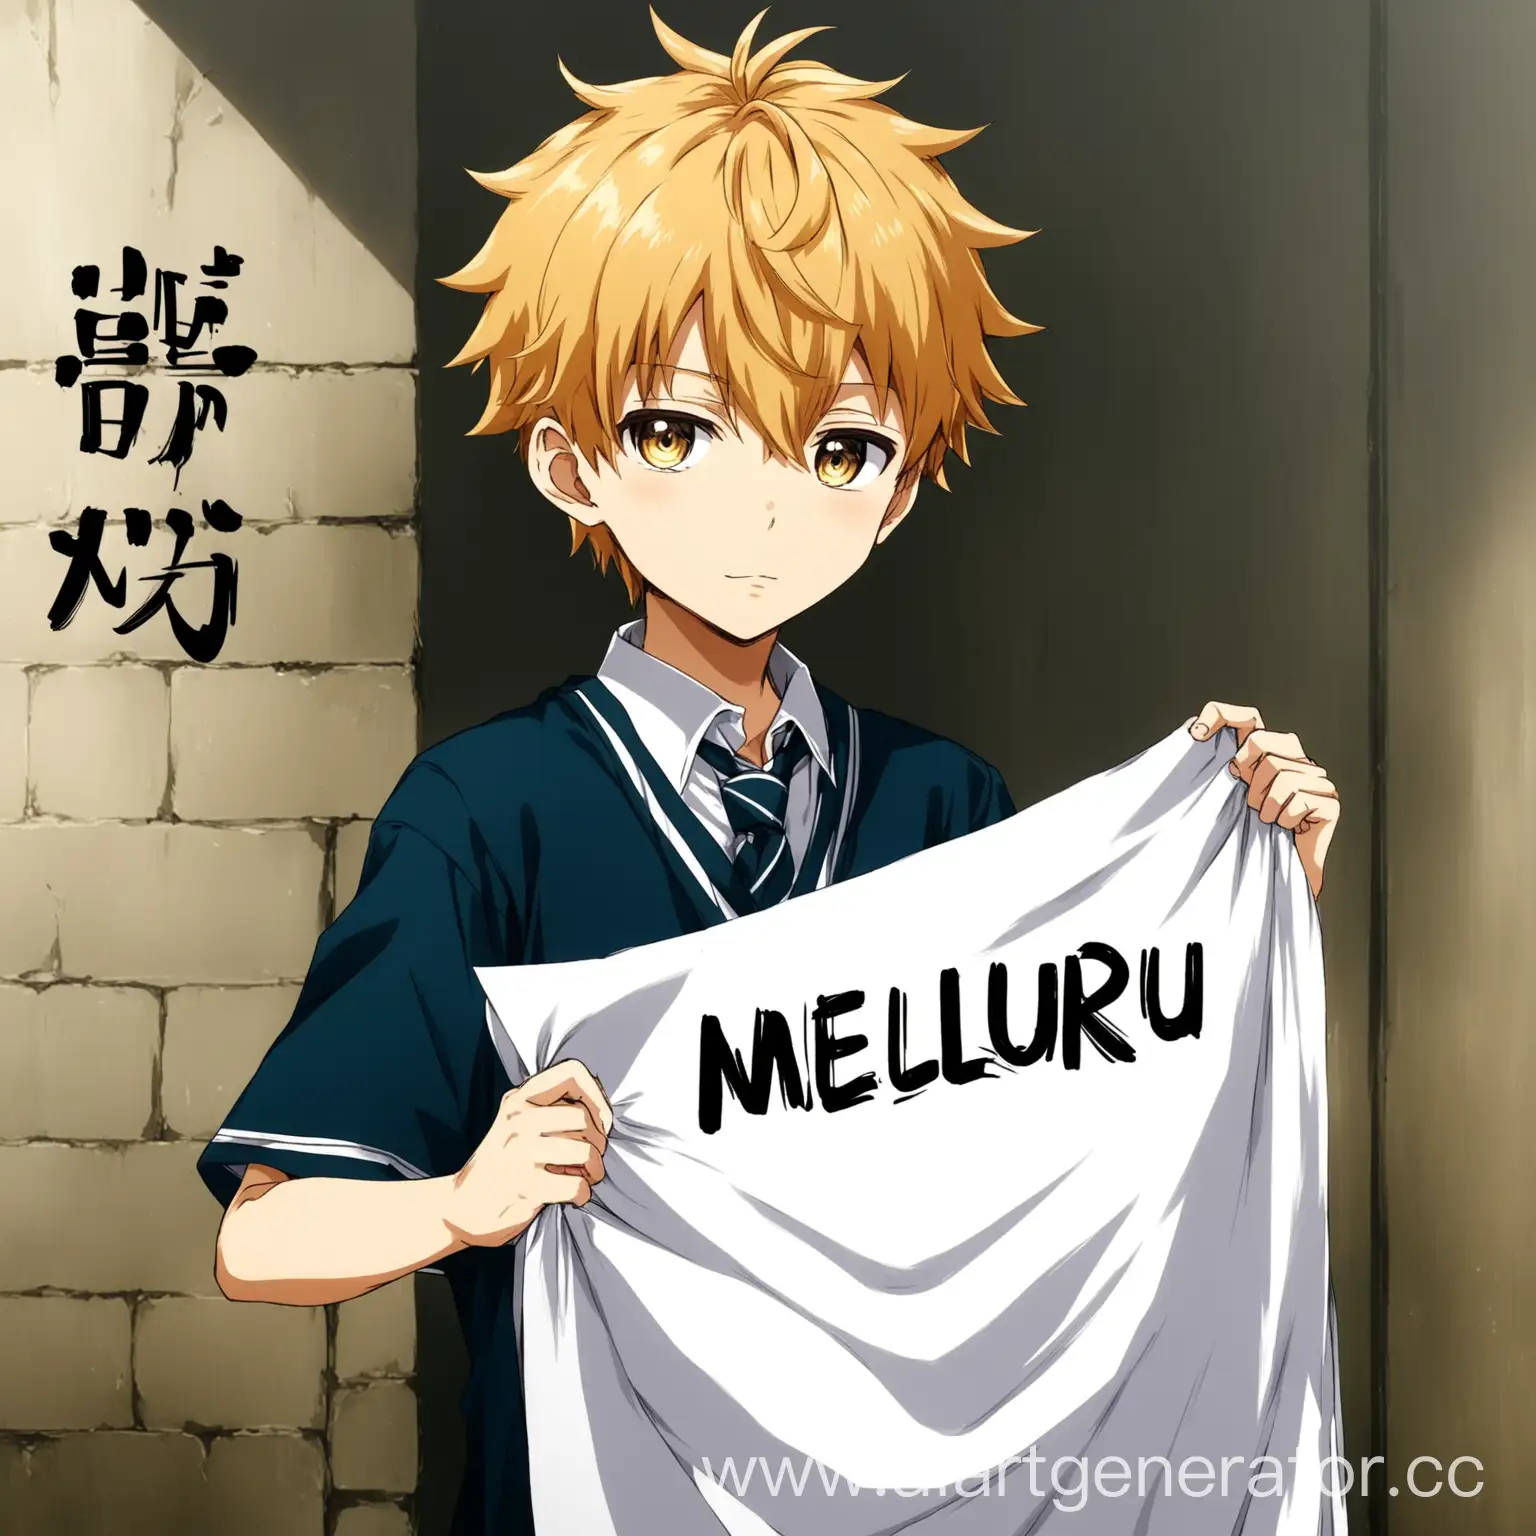 Аниме парень школьник держит листок с надписью MELLURU